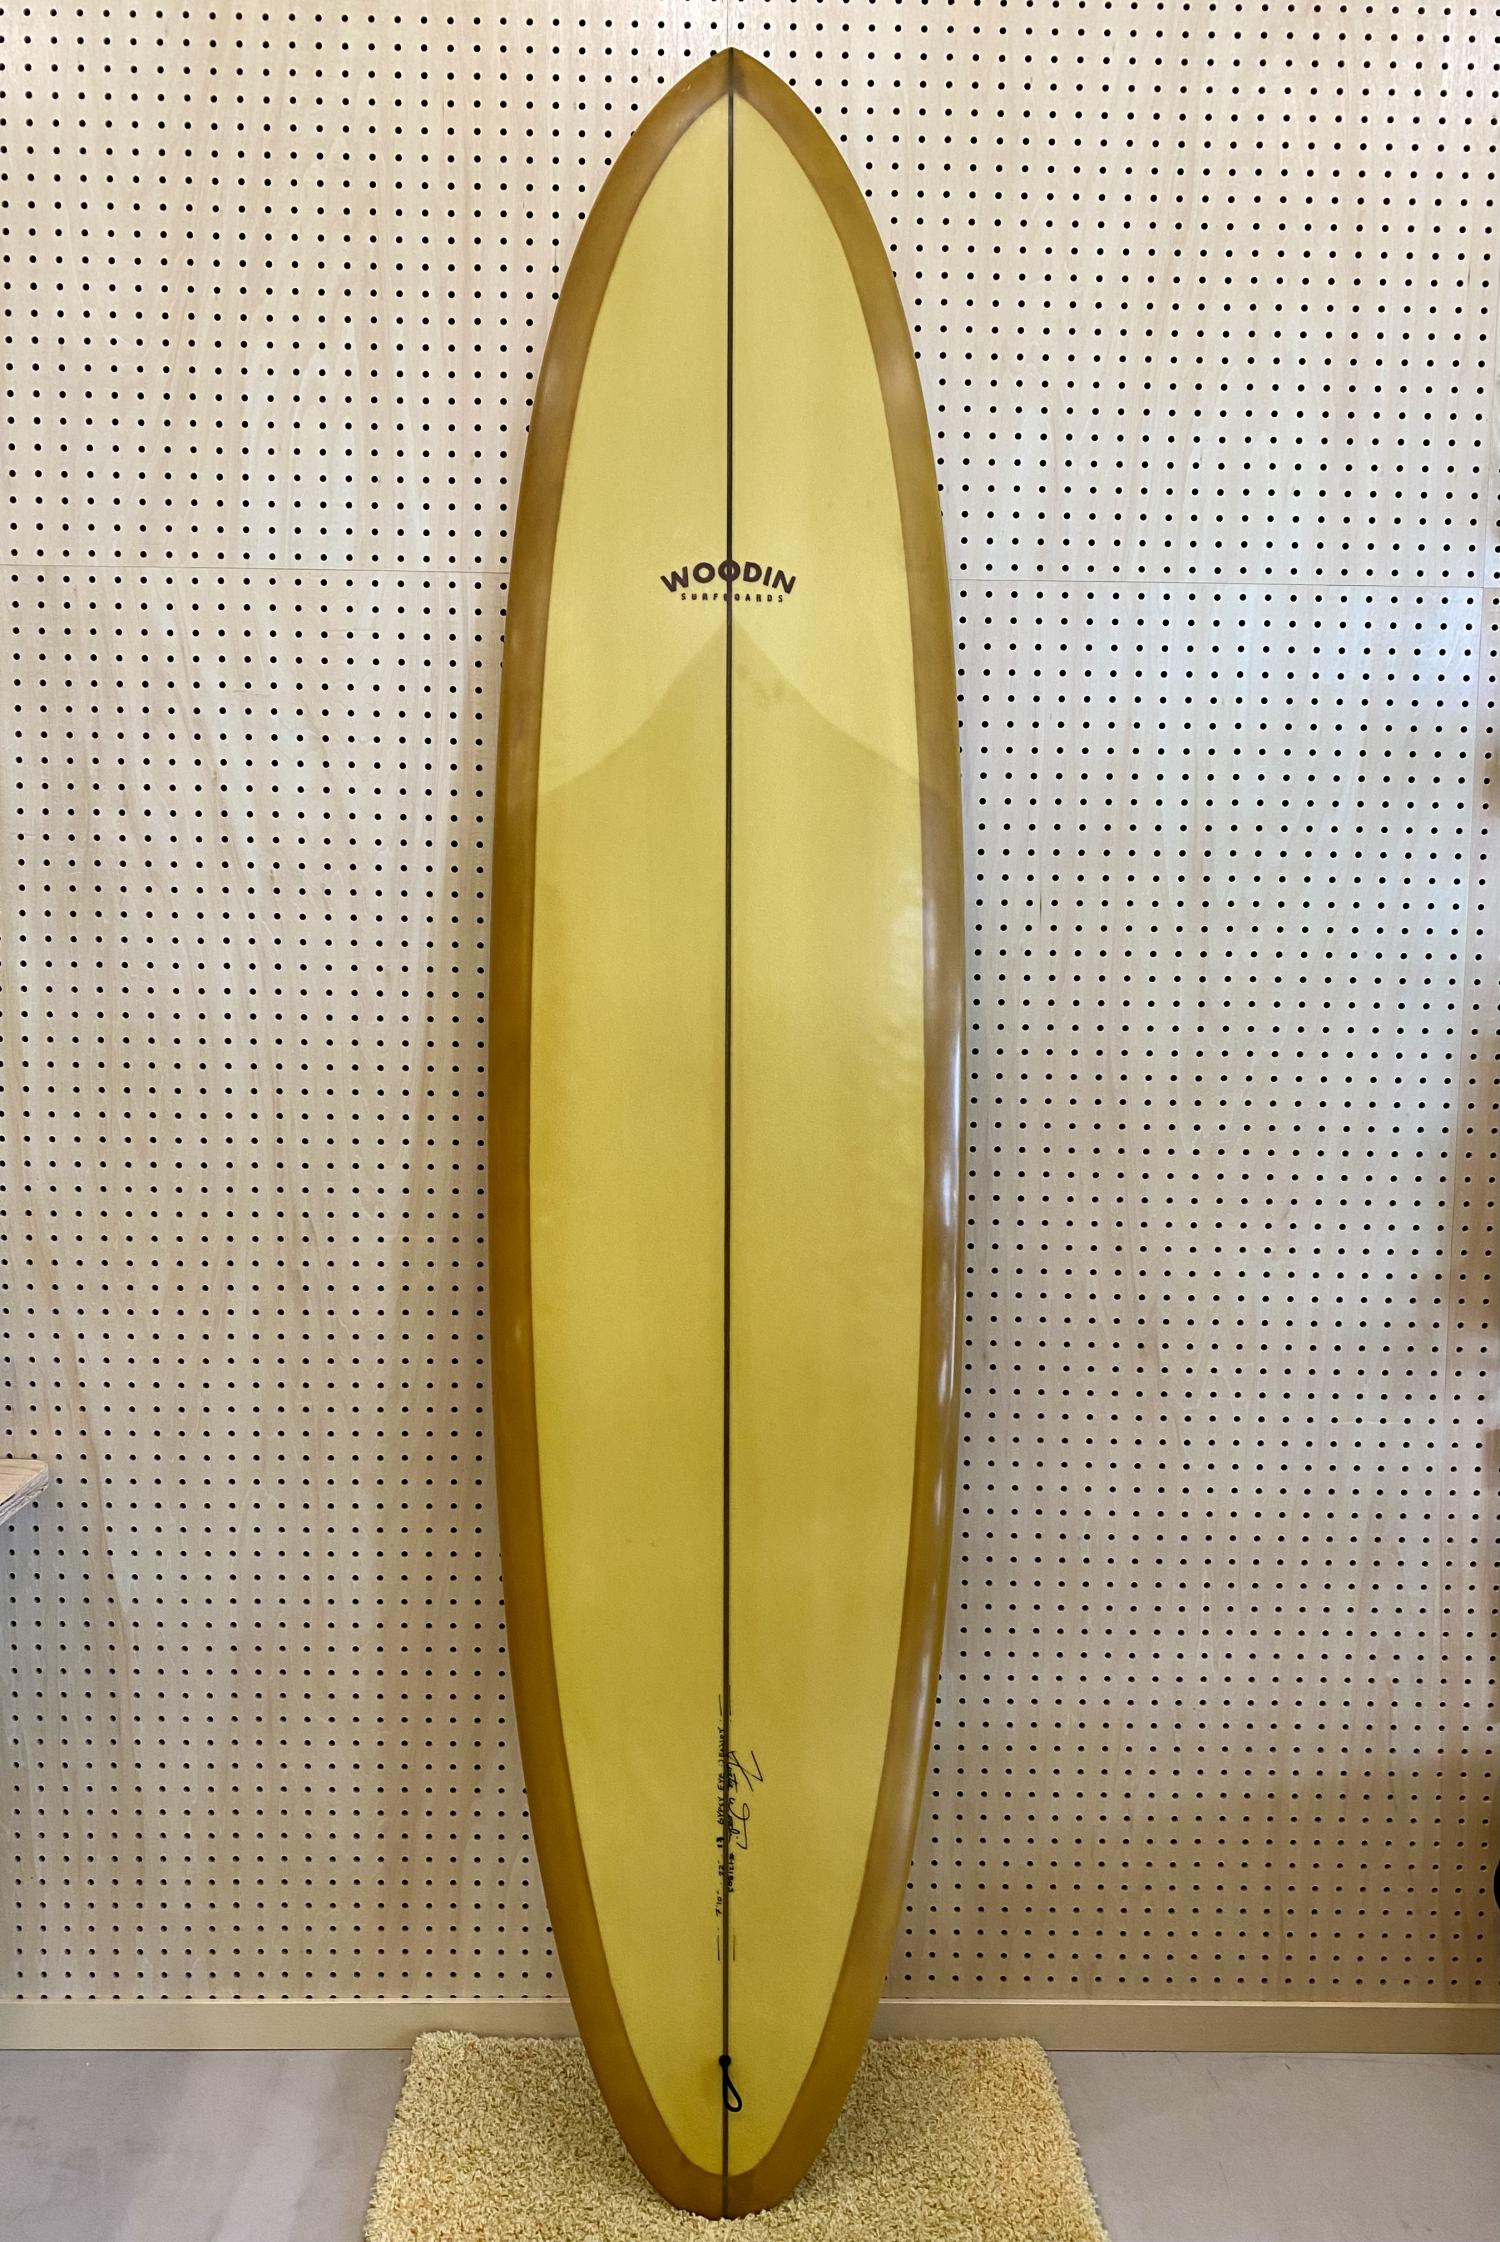 USED (Gypsy Eye model 7.10 WOODIN SURFBOARDS)